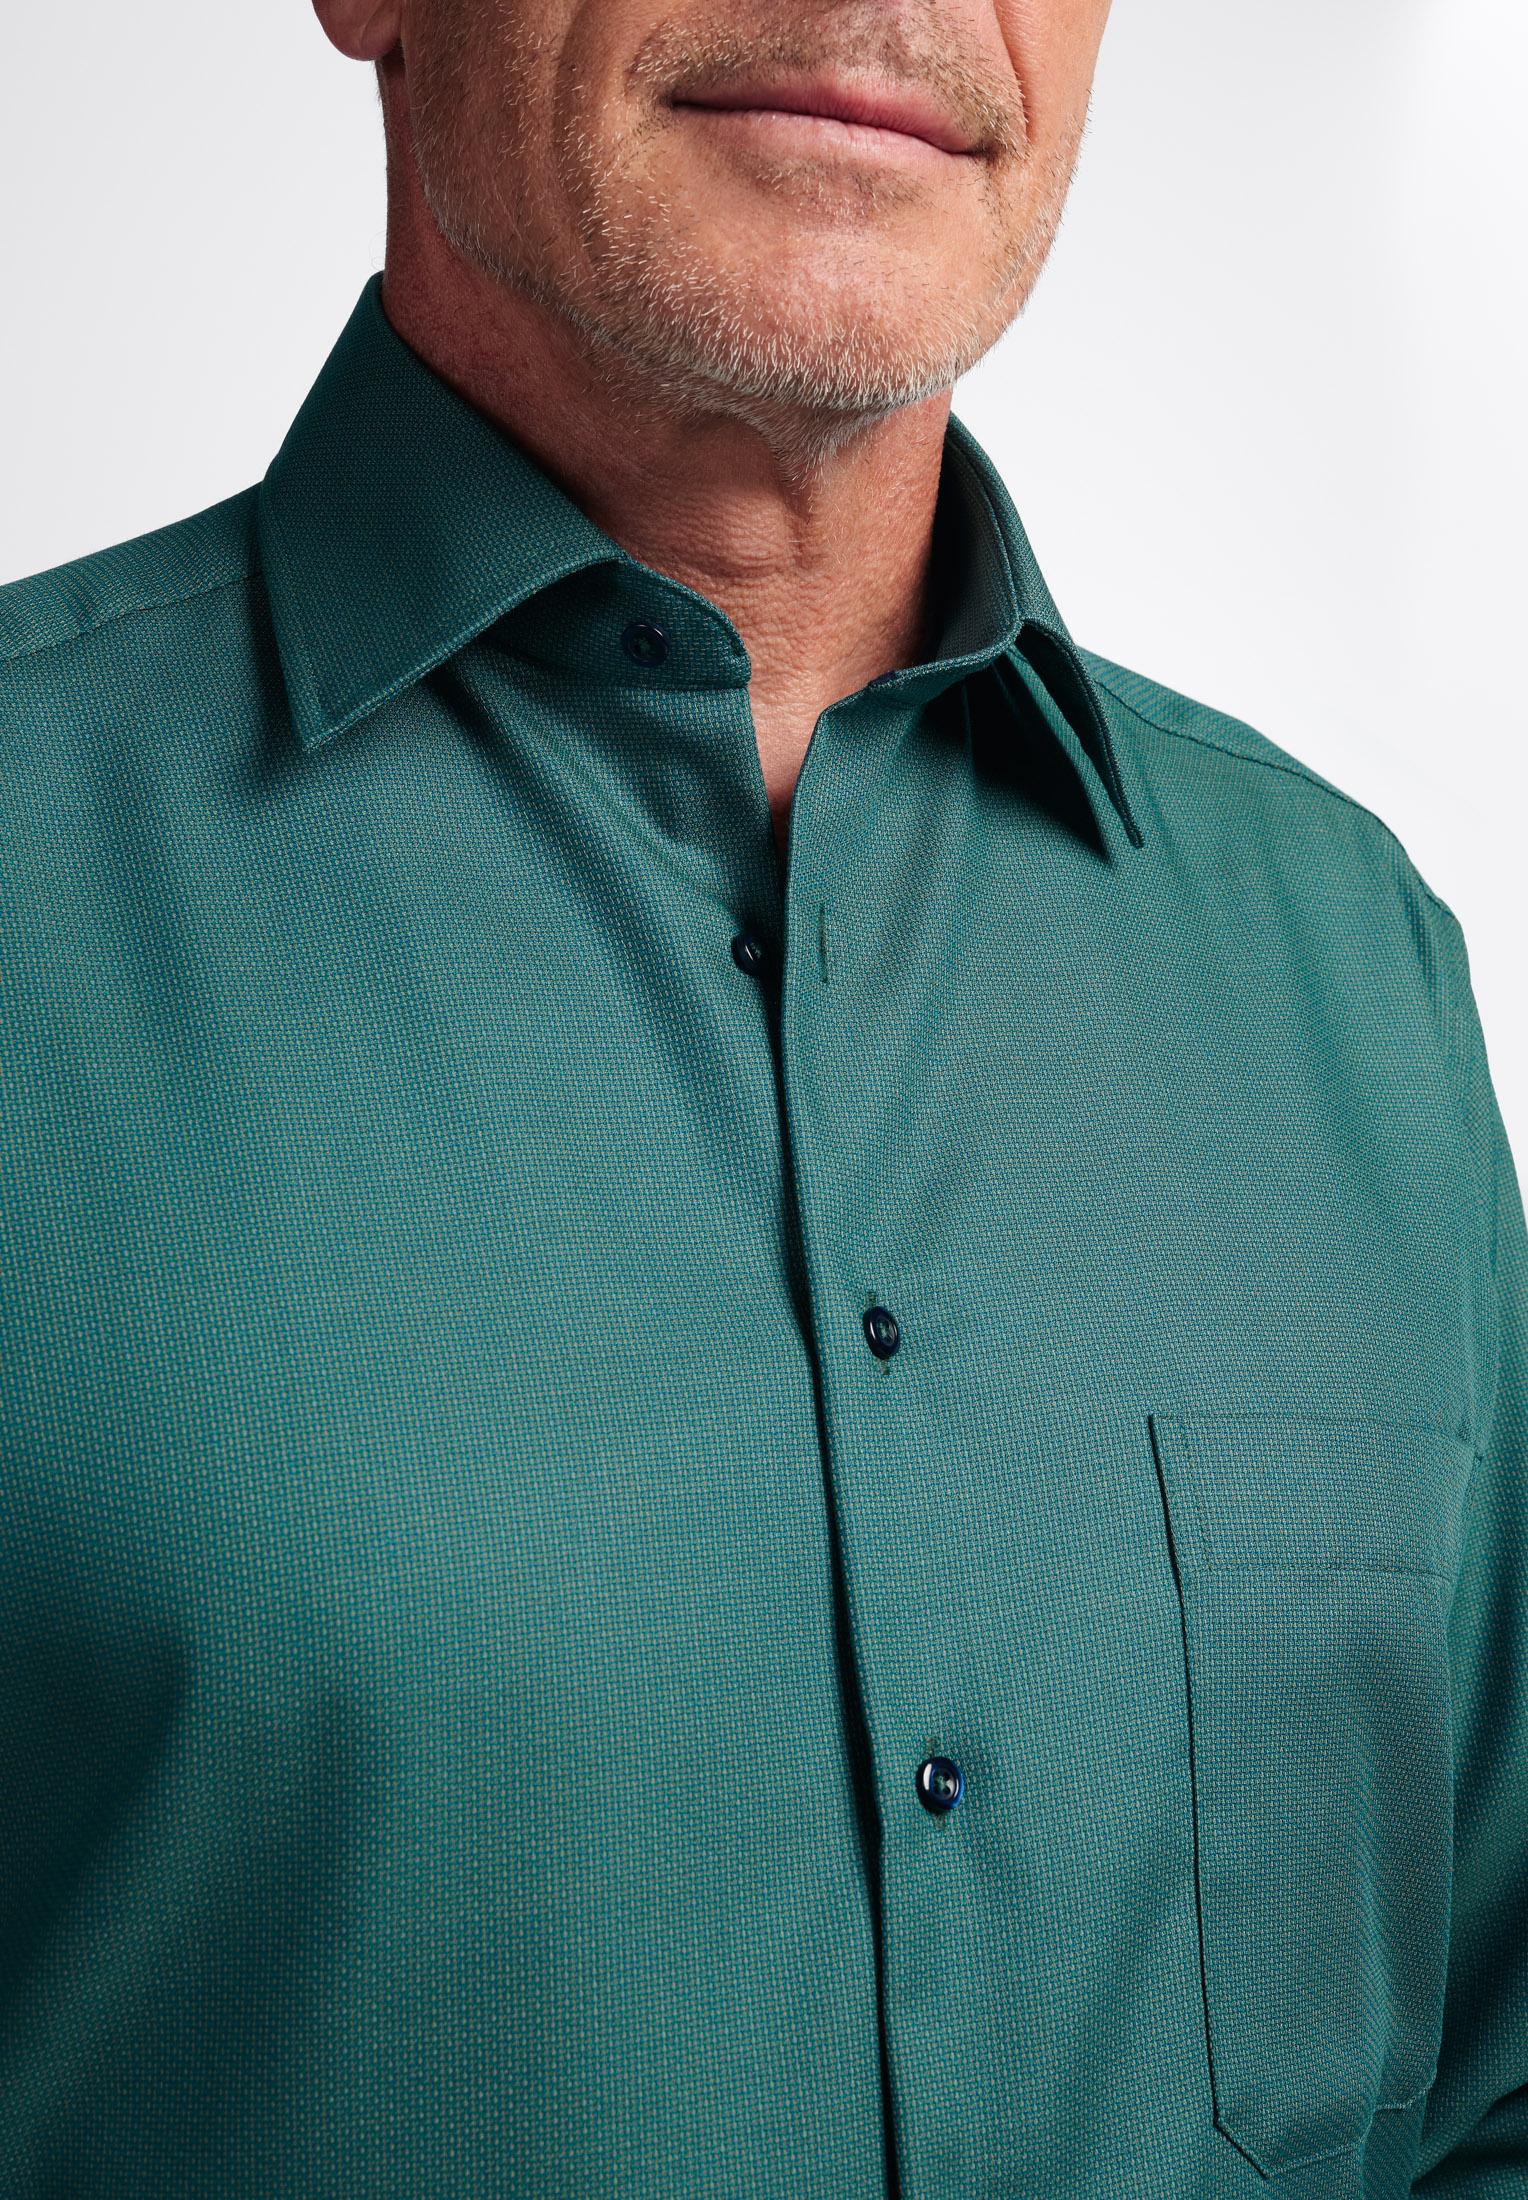 Мужская рубашка ETERNA, зеленая, цвет зеленый, размер 46 - фото 2